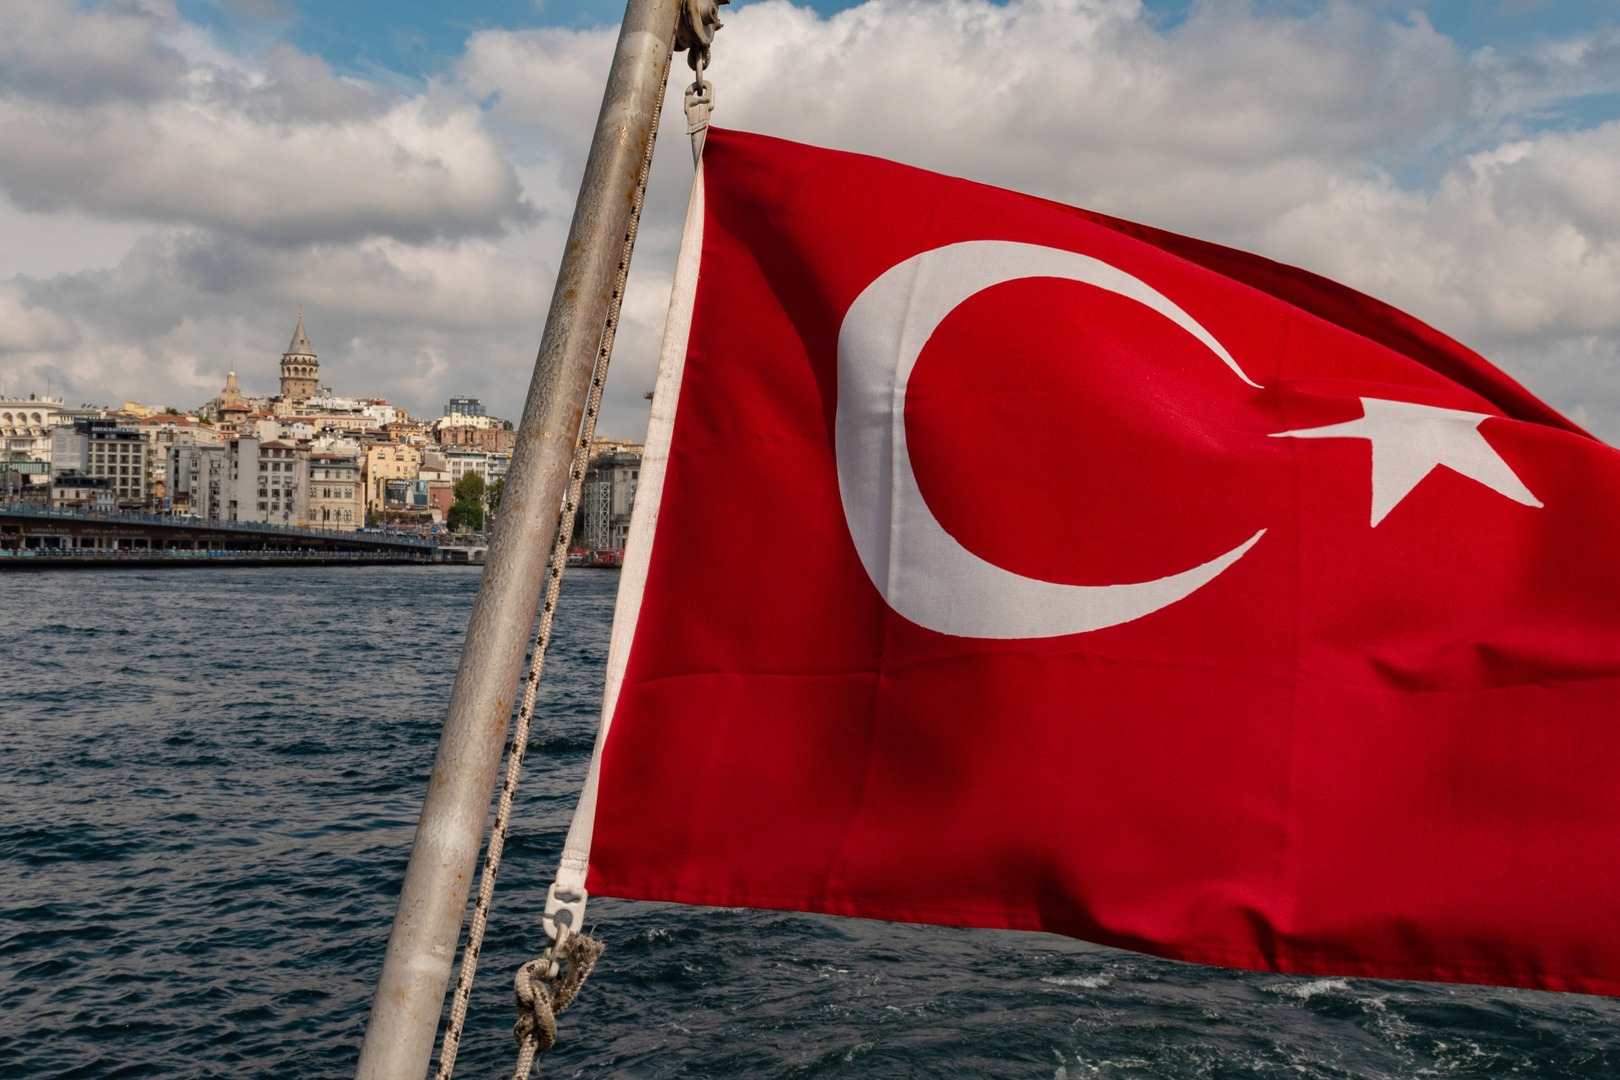 المحكمة الأوروبية لحقوق الإنسان تدين تركيا لترحيلها مهاجرا إلى سوريا بحوزته تصريح إقامة قانوني